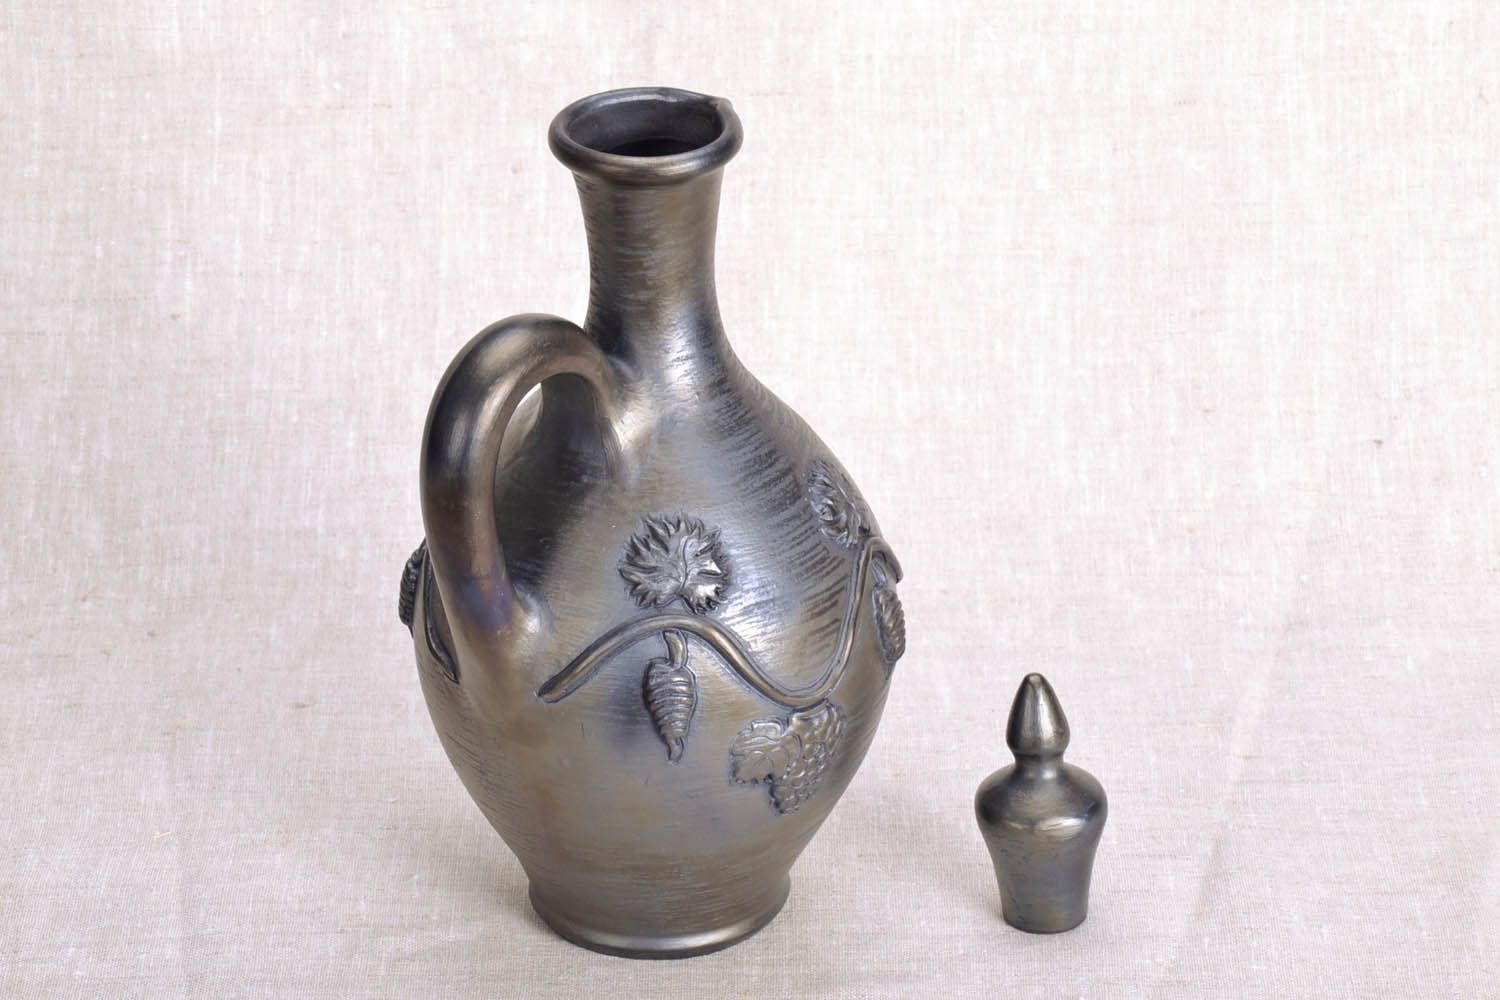 Jarro de argila com elementos moldados feito à mão louça de cerâmica decorativa artesanal foto 3